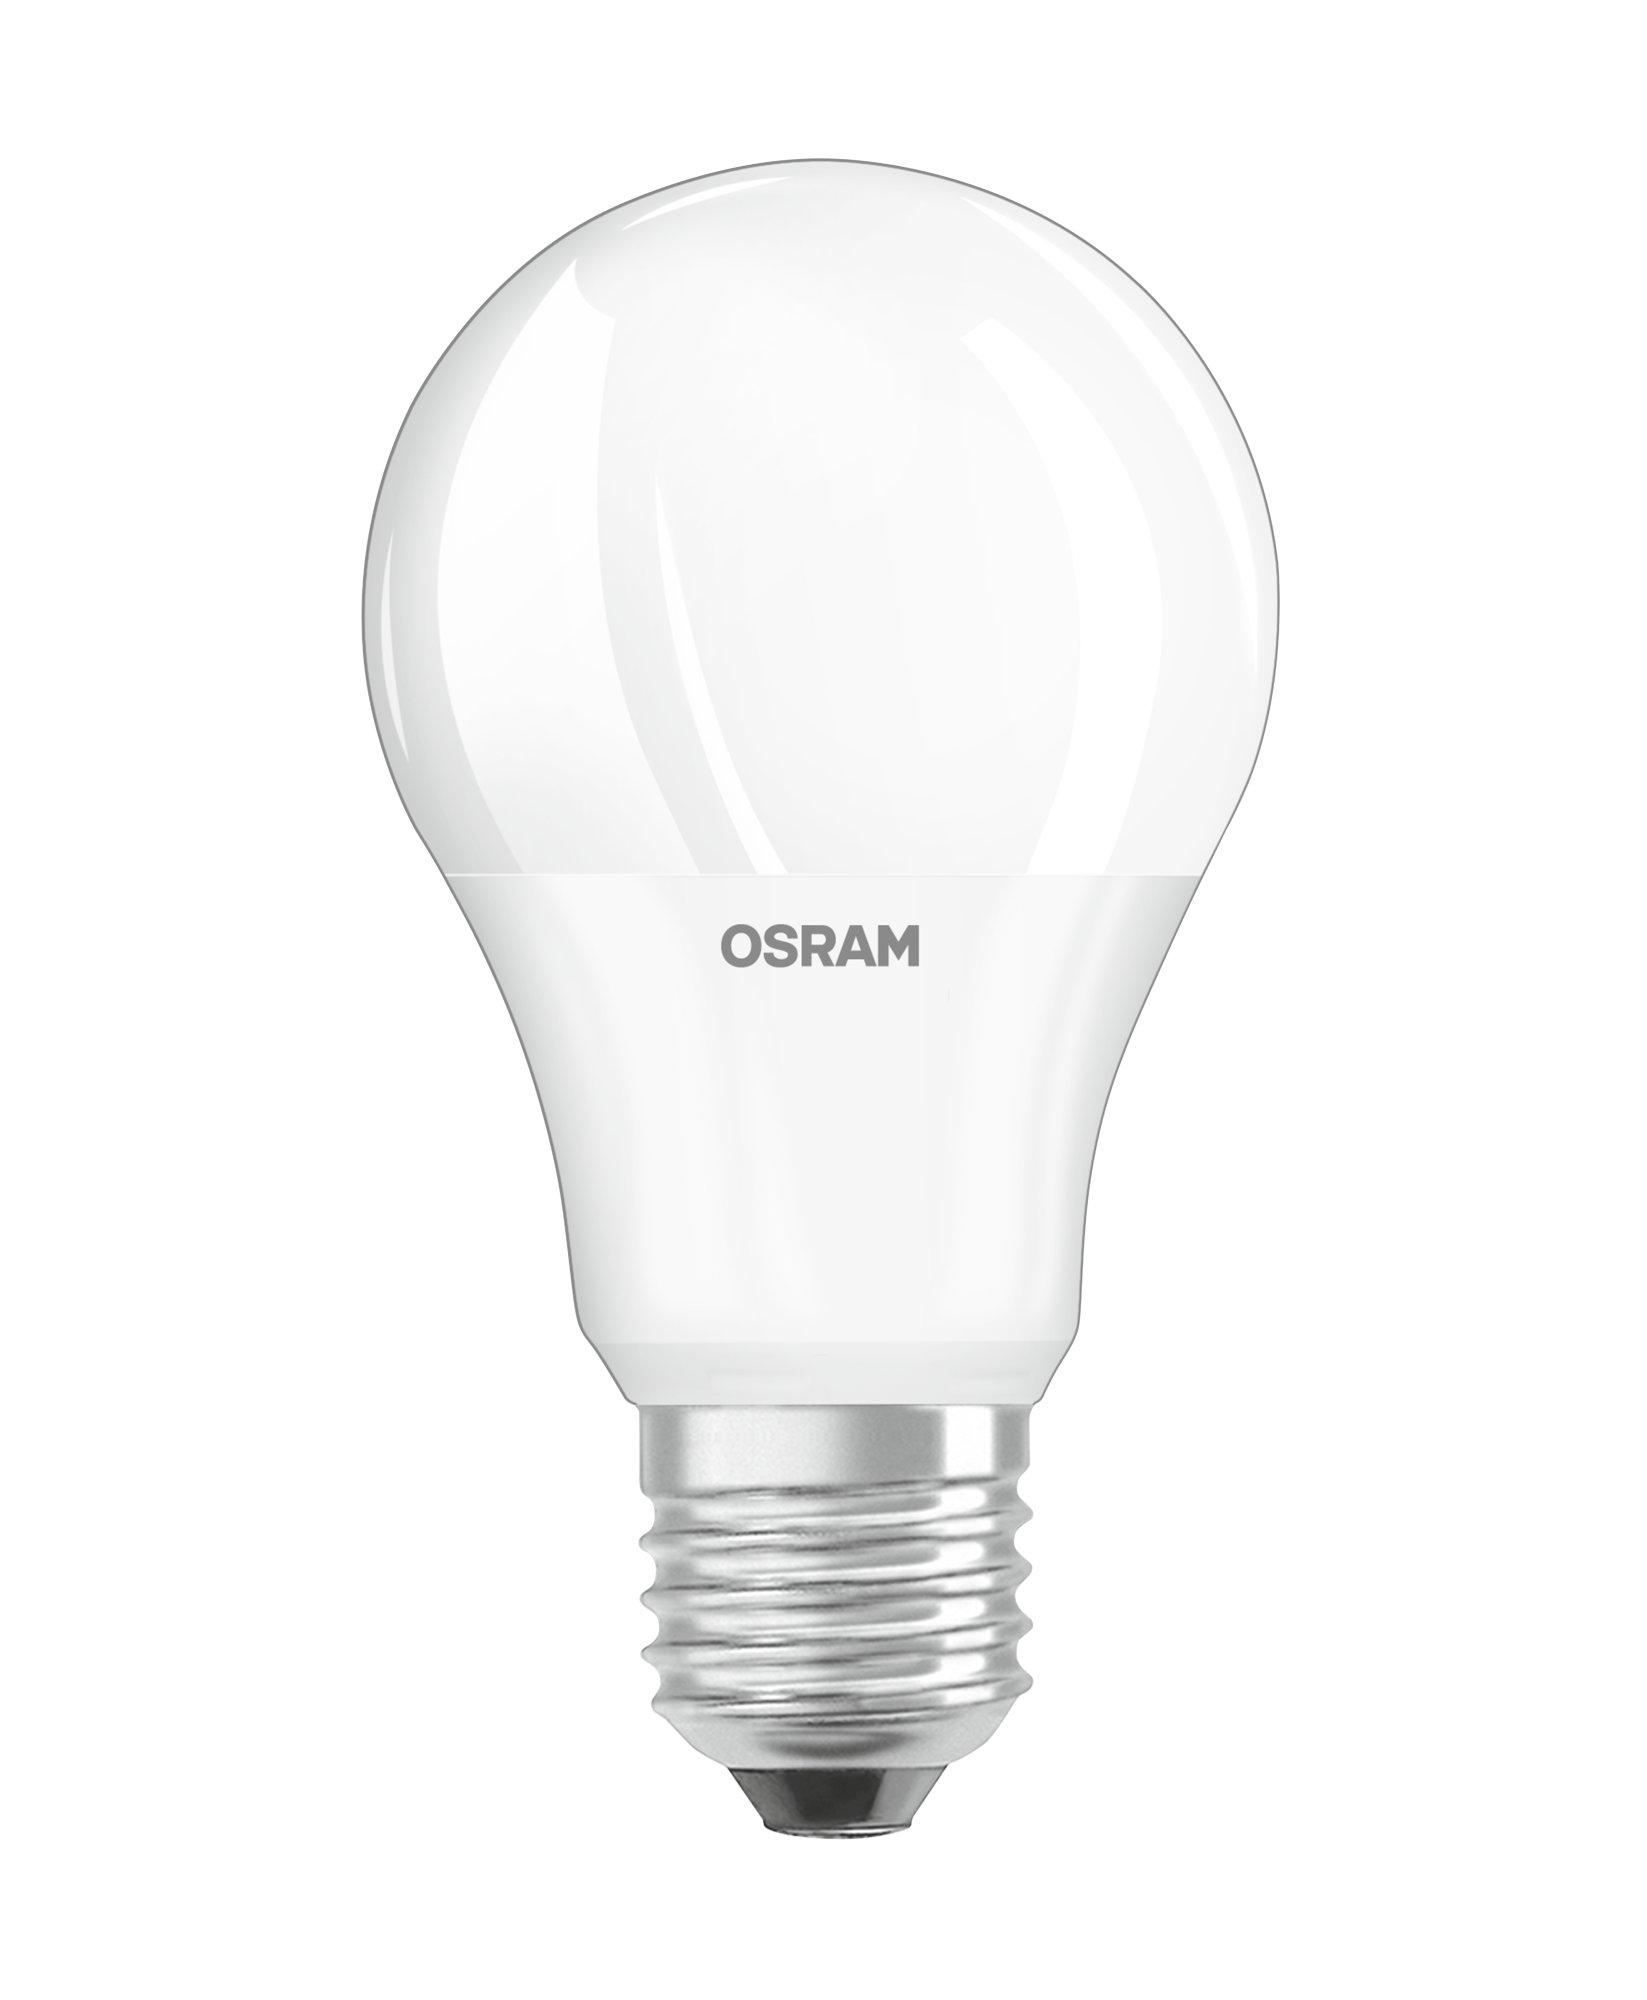 Osram Star Lampe Classic A60 8,5W E27 warmwhite 806lm 2700K